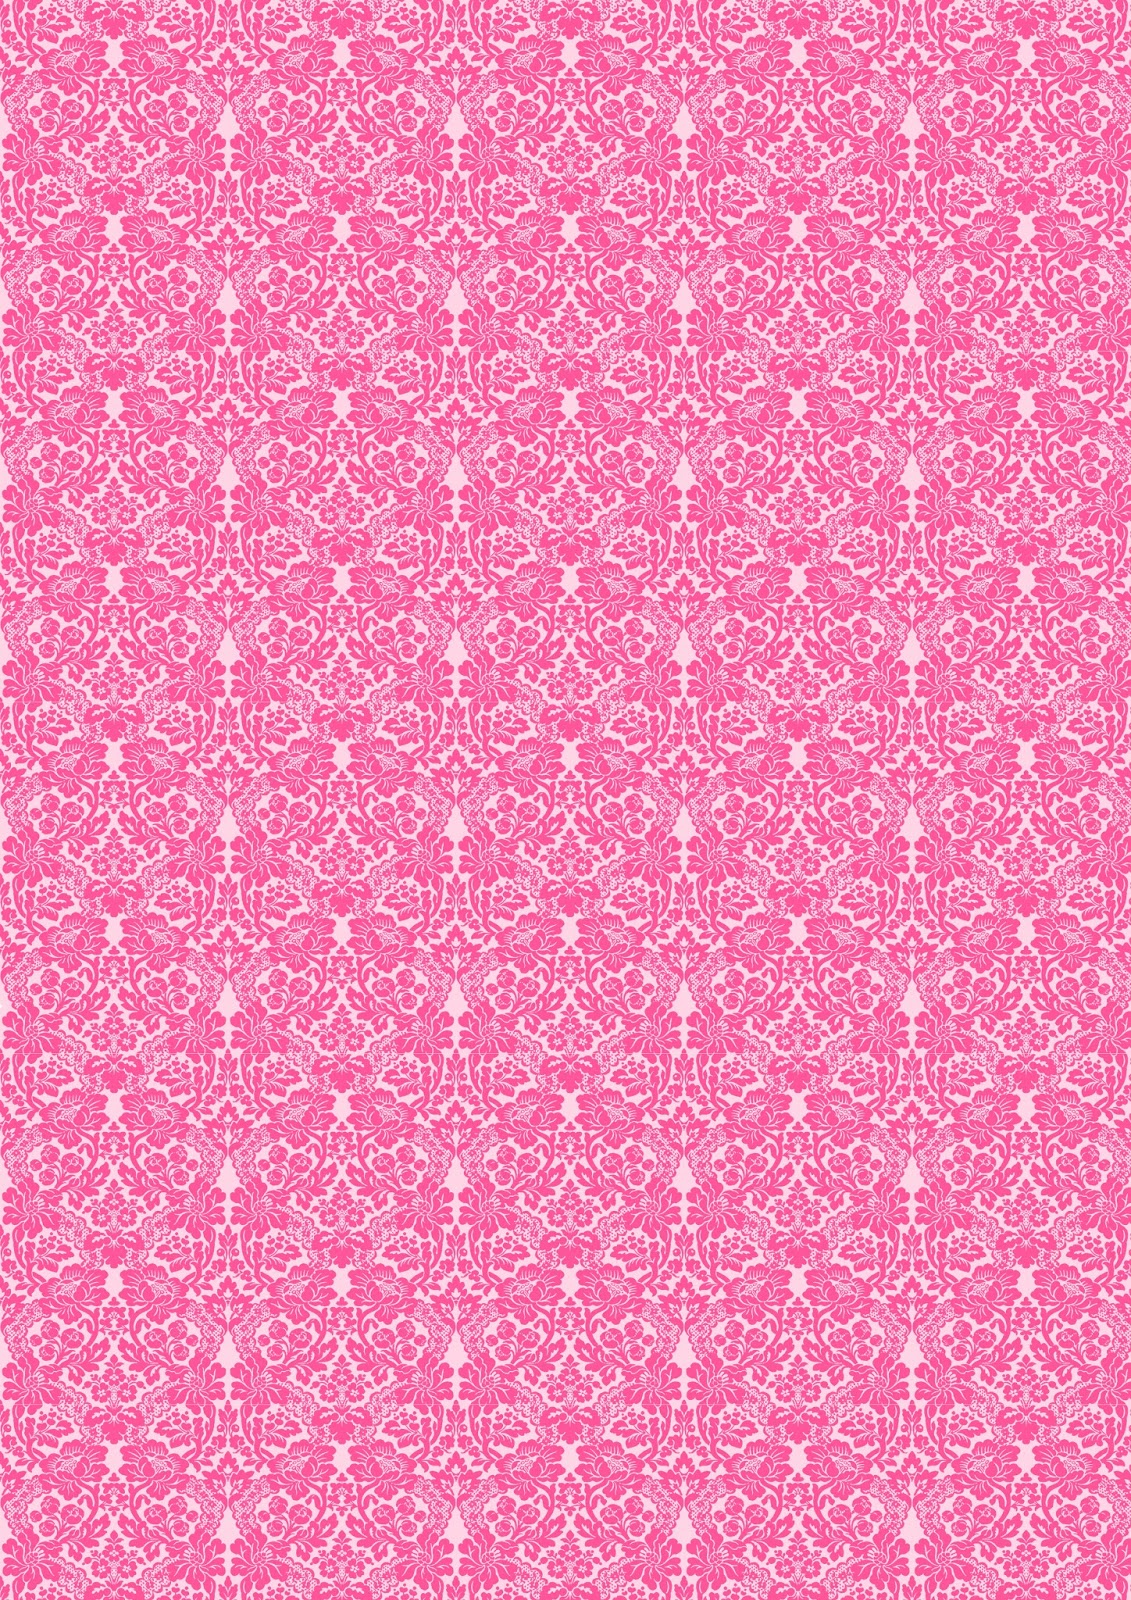 Free digital pink damask scrapbooking paper ausdruckbares